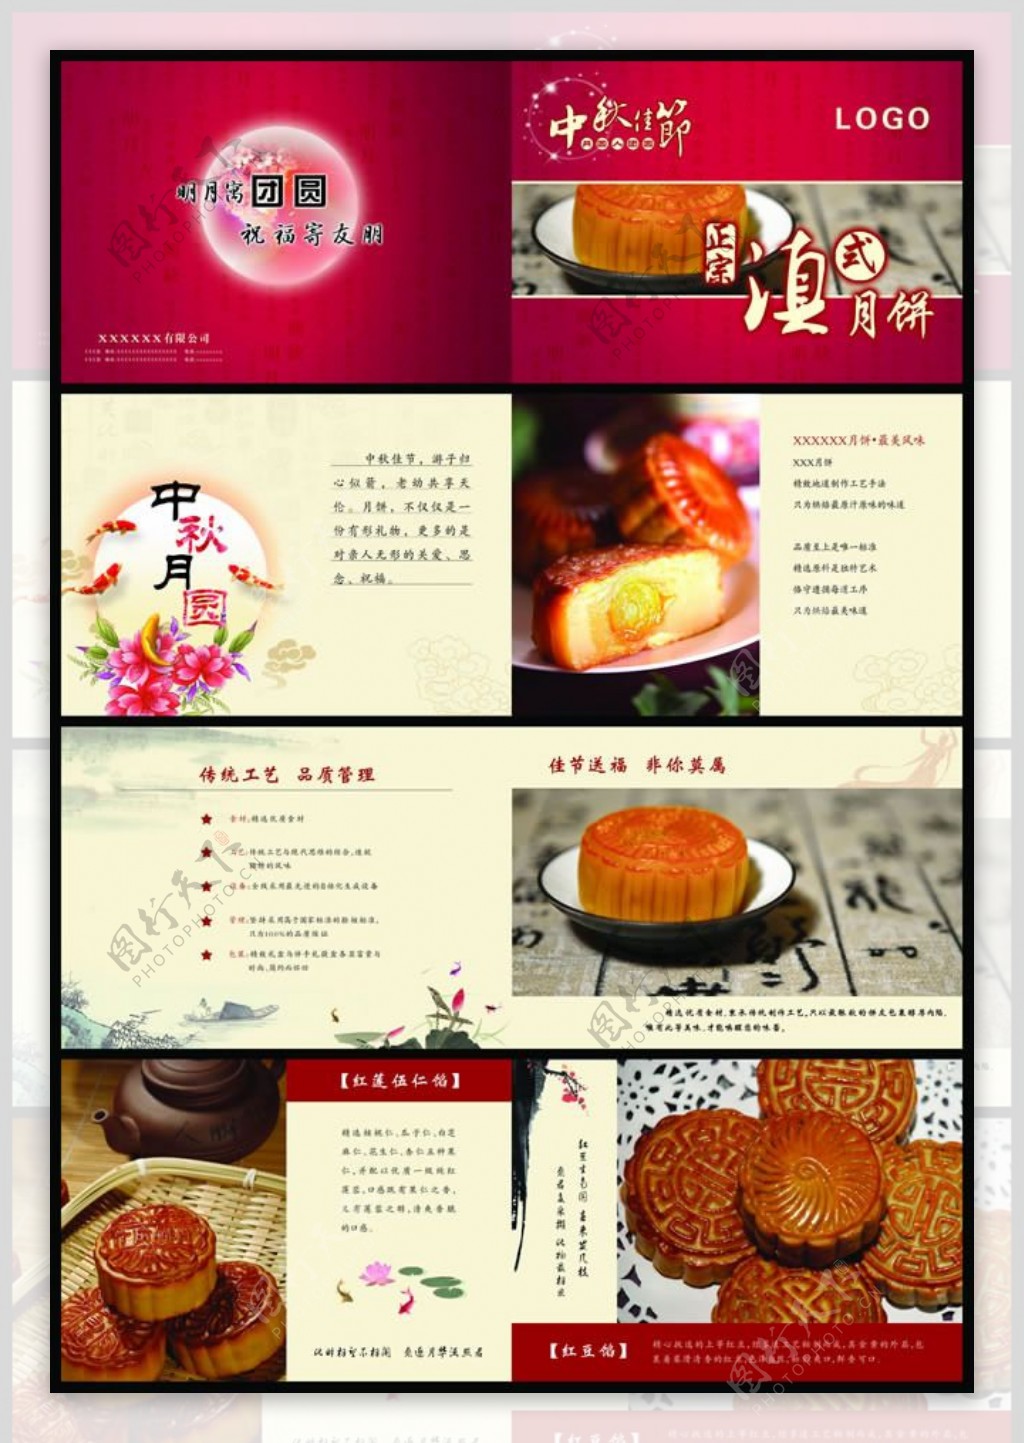 中秋节滇式月饼宣传画册psd素材